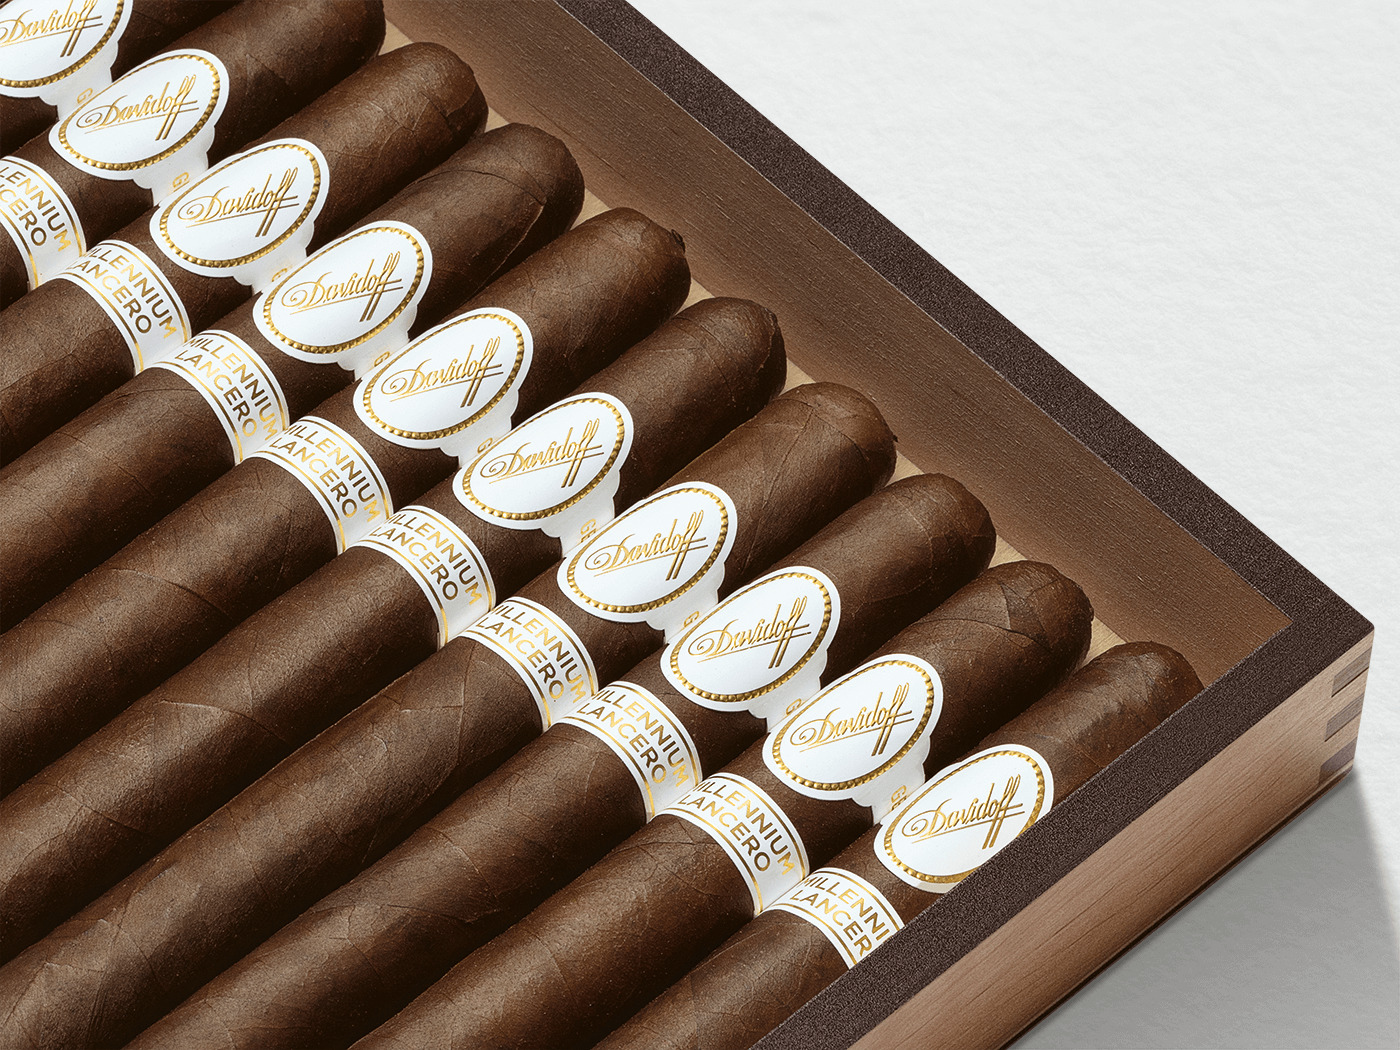 Geöffnete Kiste der Davidoff Millennium Lancero Limited Edition Collection mit 10 Zigarren drin. 